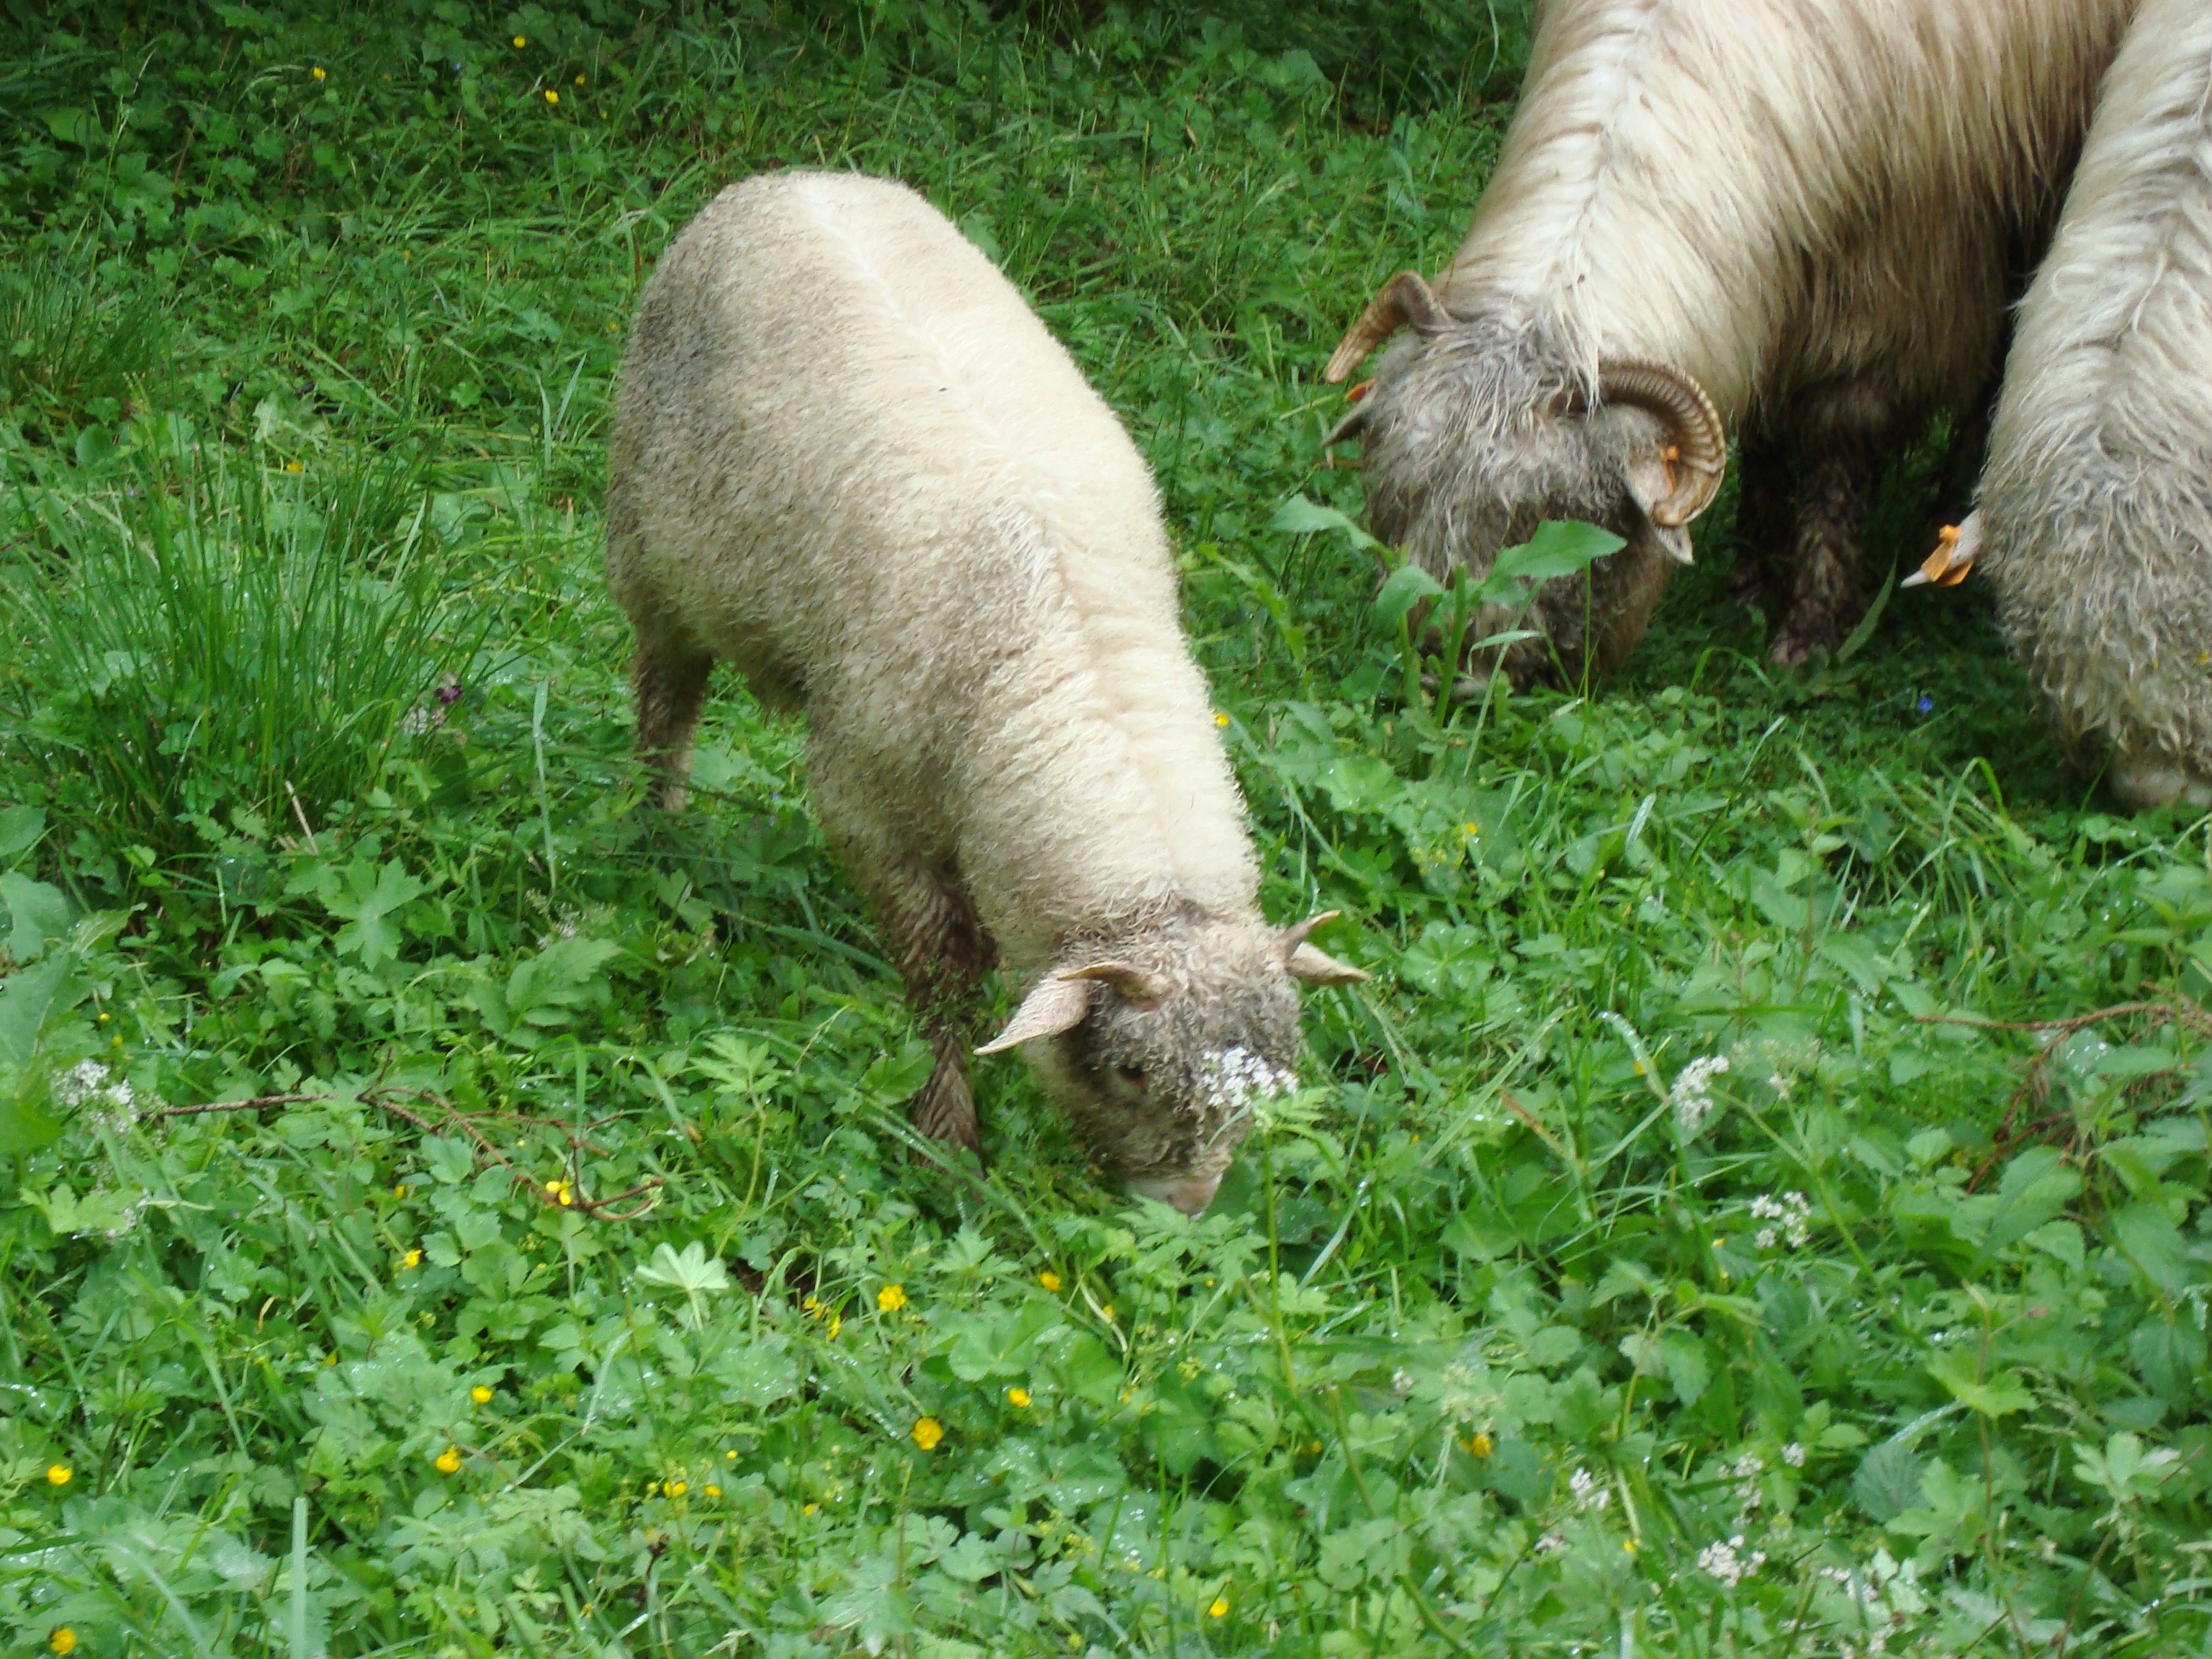 General 3072x2304 sheep animals grass mammals outdoors plants